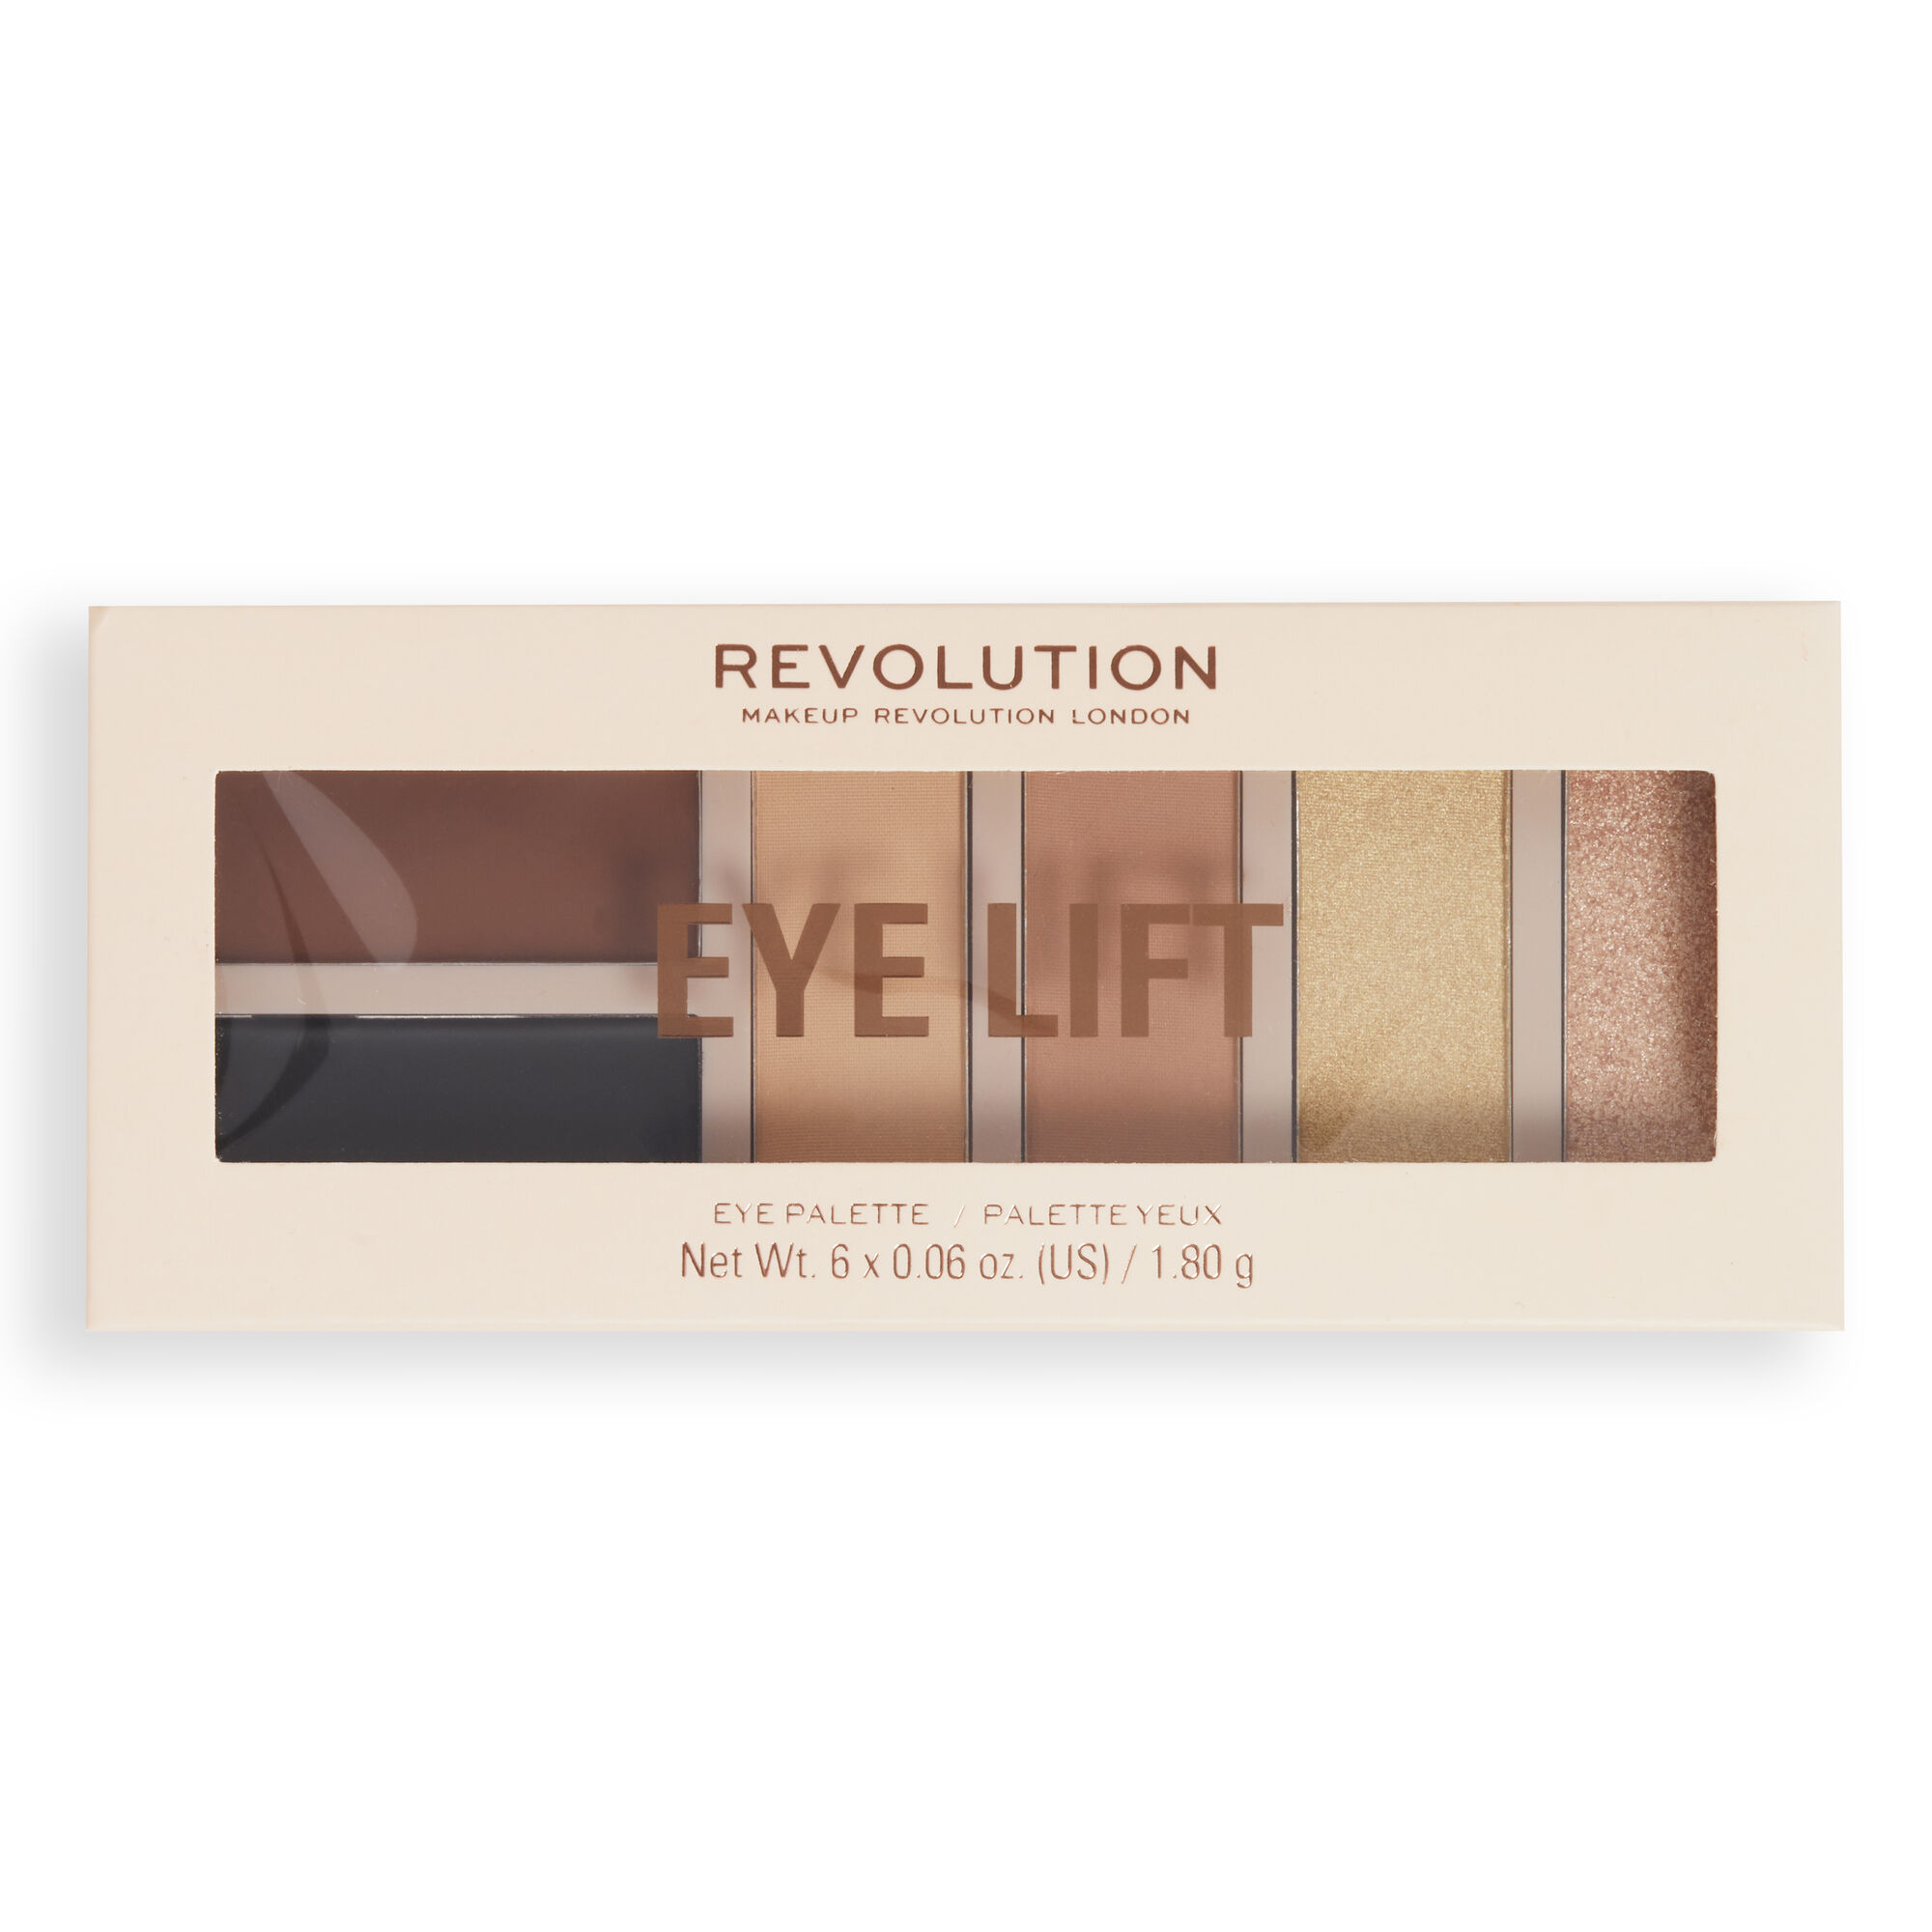 Палетка Revolution Makeup для макияжа глаз: тени-бронзер подводка тени Eye Lift Palette сирены амая ободников н н